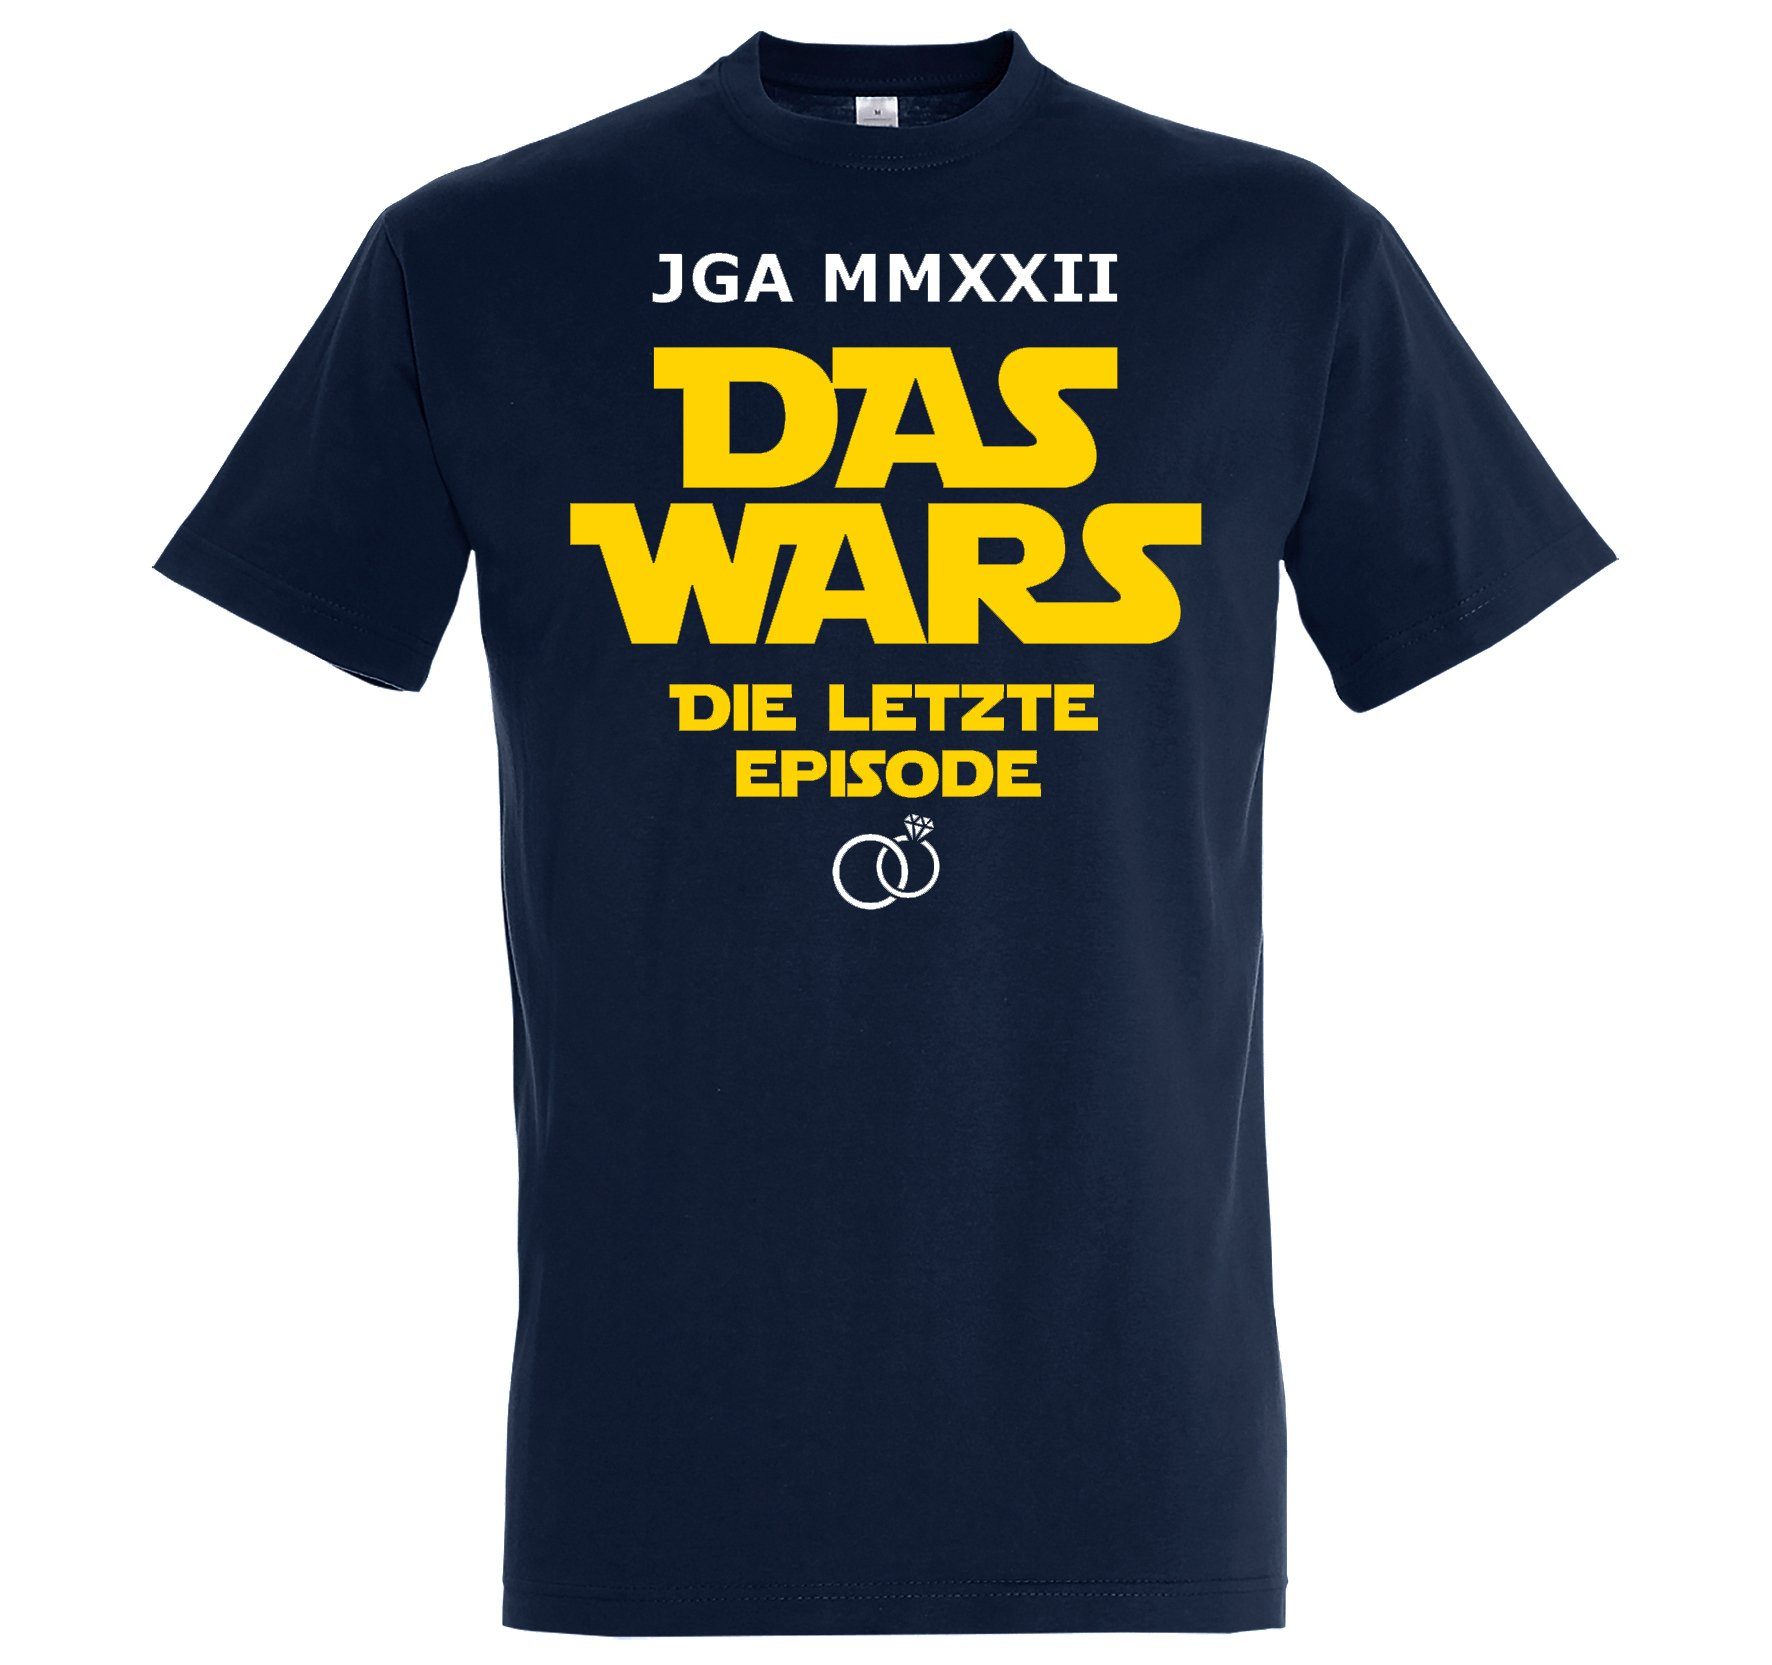 Youth Designz Print-Shirt JGA 2022 DAS WARS Herren T-Shirt mit lustigem Spruch Aufdruck Navyblau